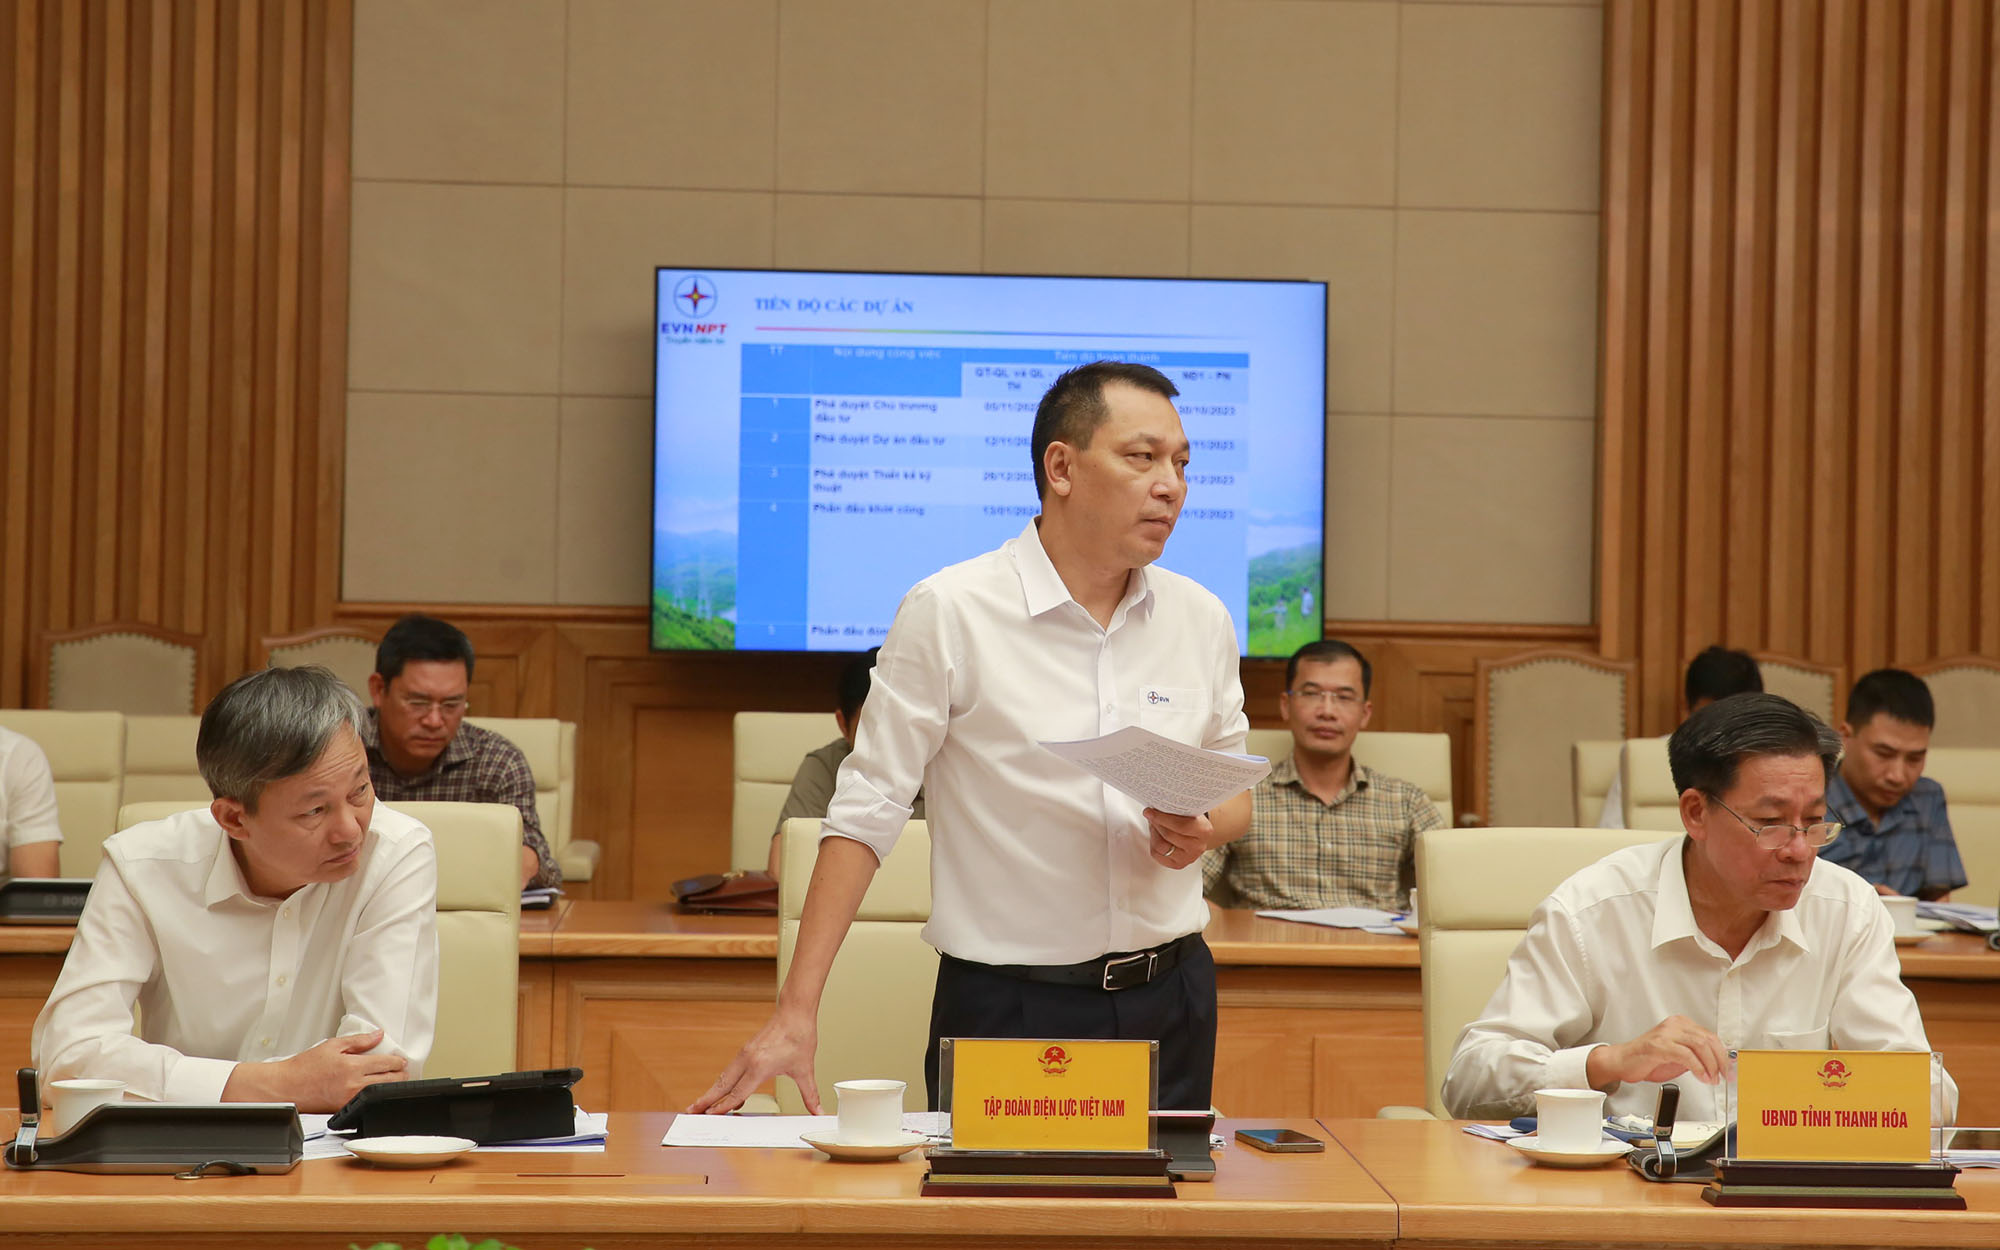 Chủ tịch Hội đồng thành viên EVN Đặng Hoàng An báo cáo về tiến độ các dự án đường dây 500 kV mạch 3 - Ảnh: VGP/Minh Khôi